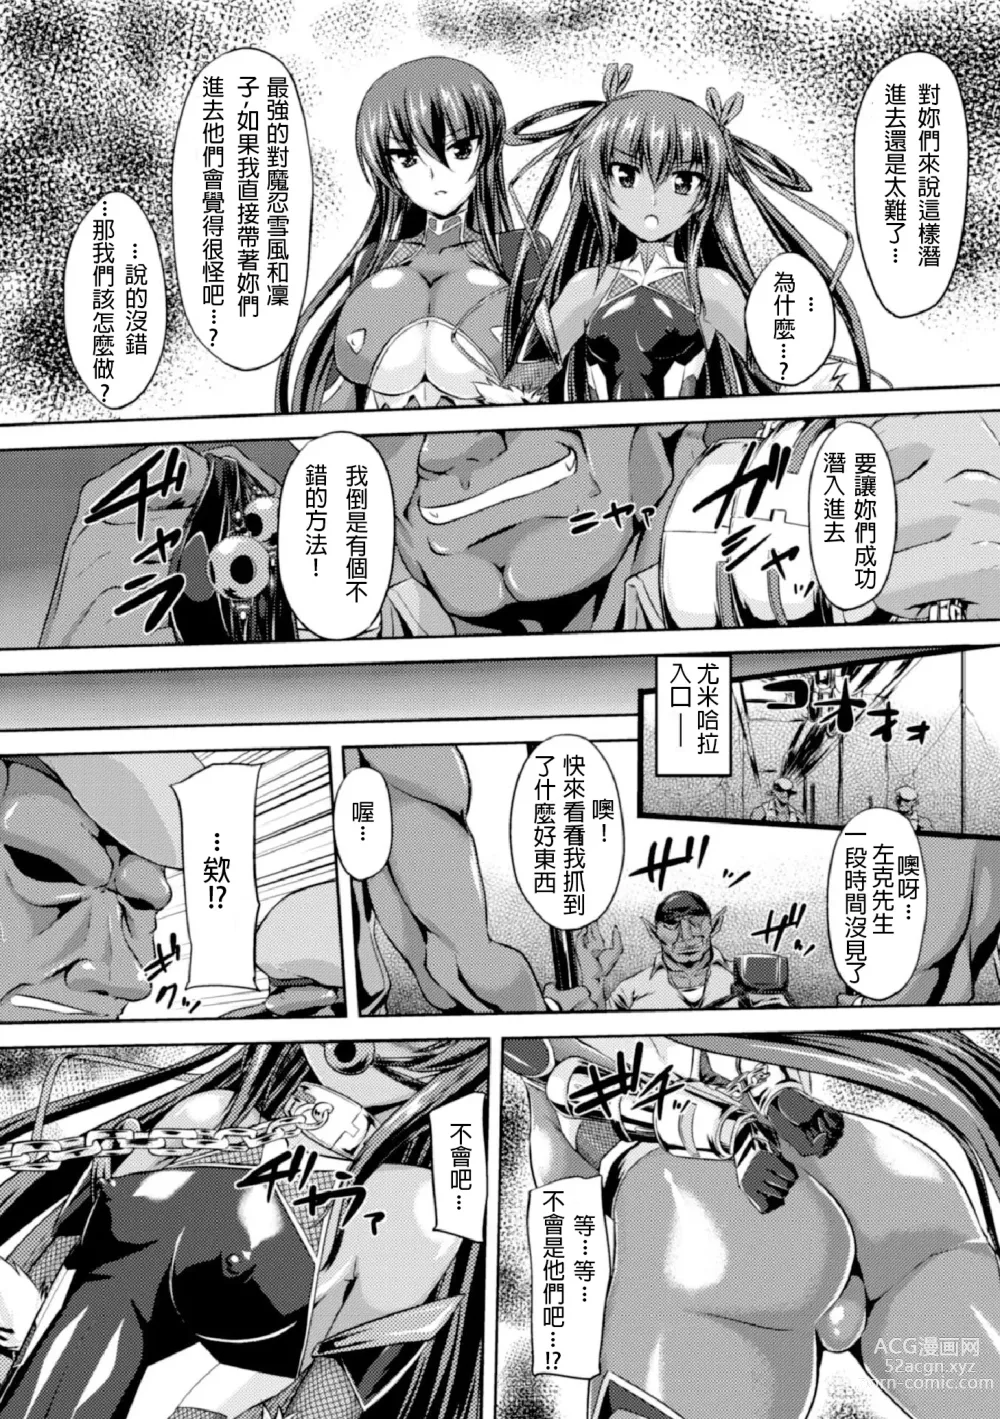 Page 5 of manga Taimanin Yukikaze ~Taimanin Wa Ingoku Ni Shizumu~